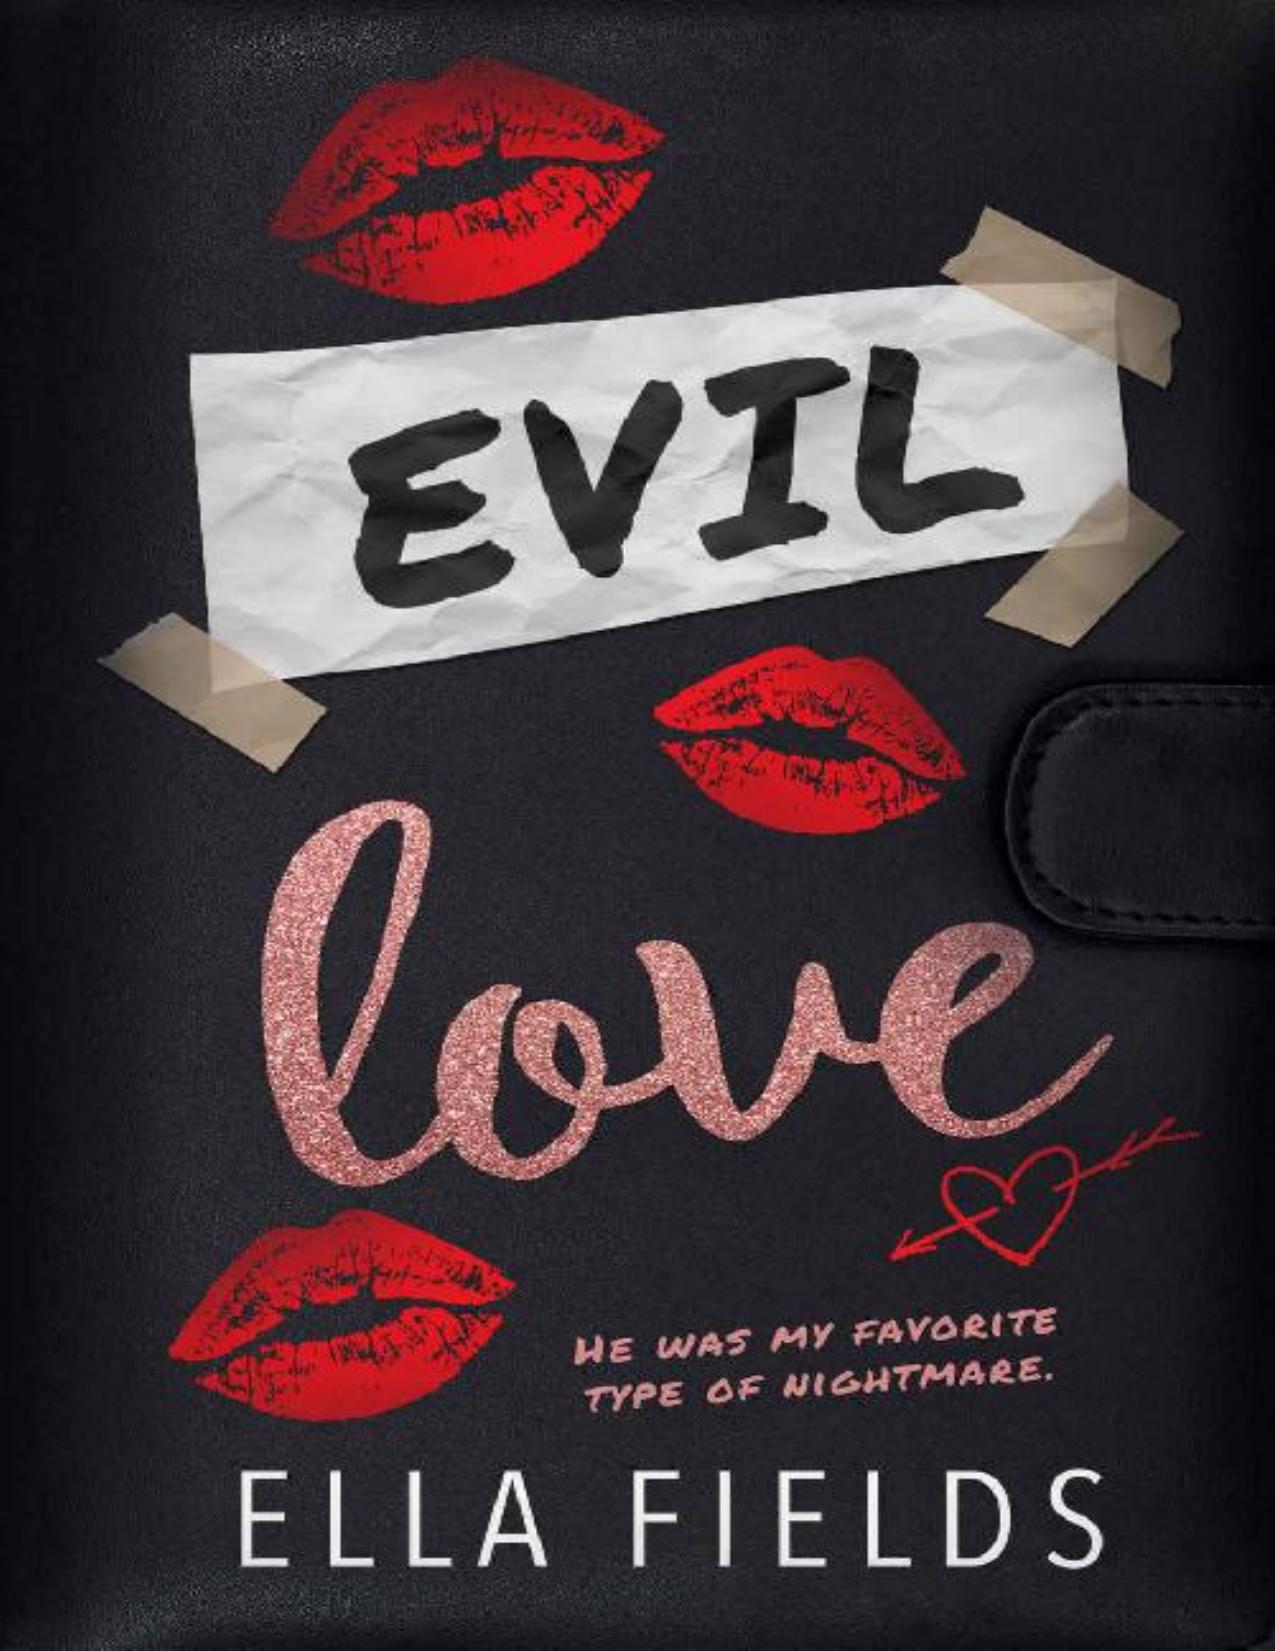 Evil Love